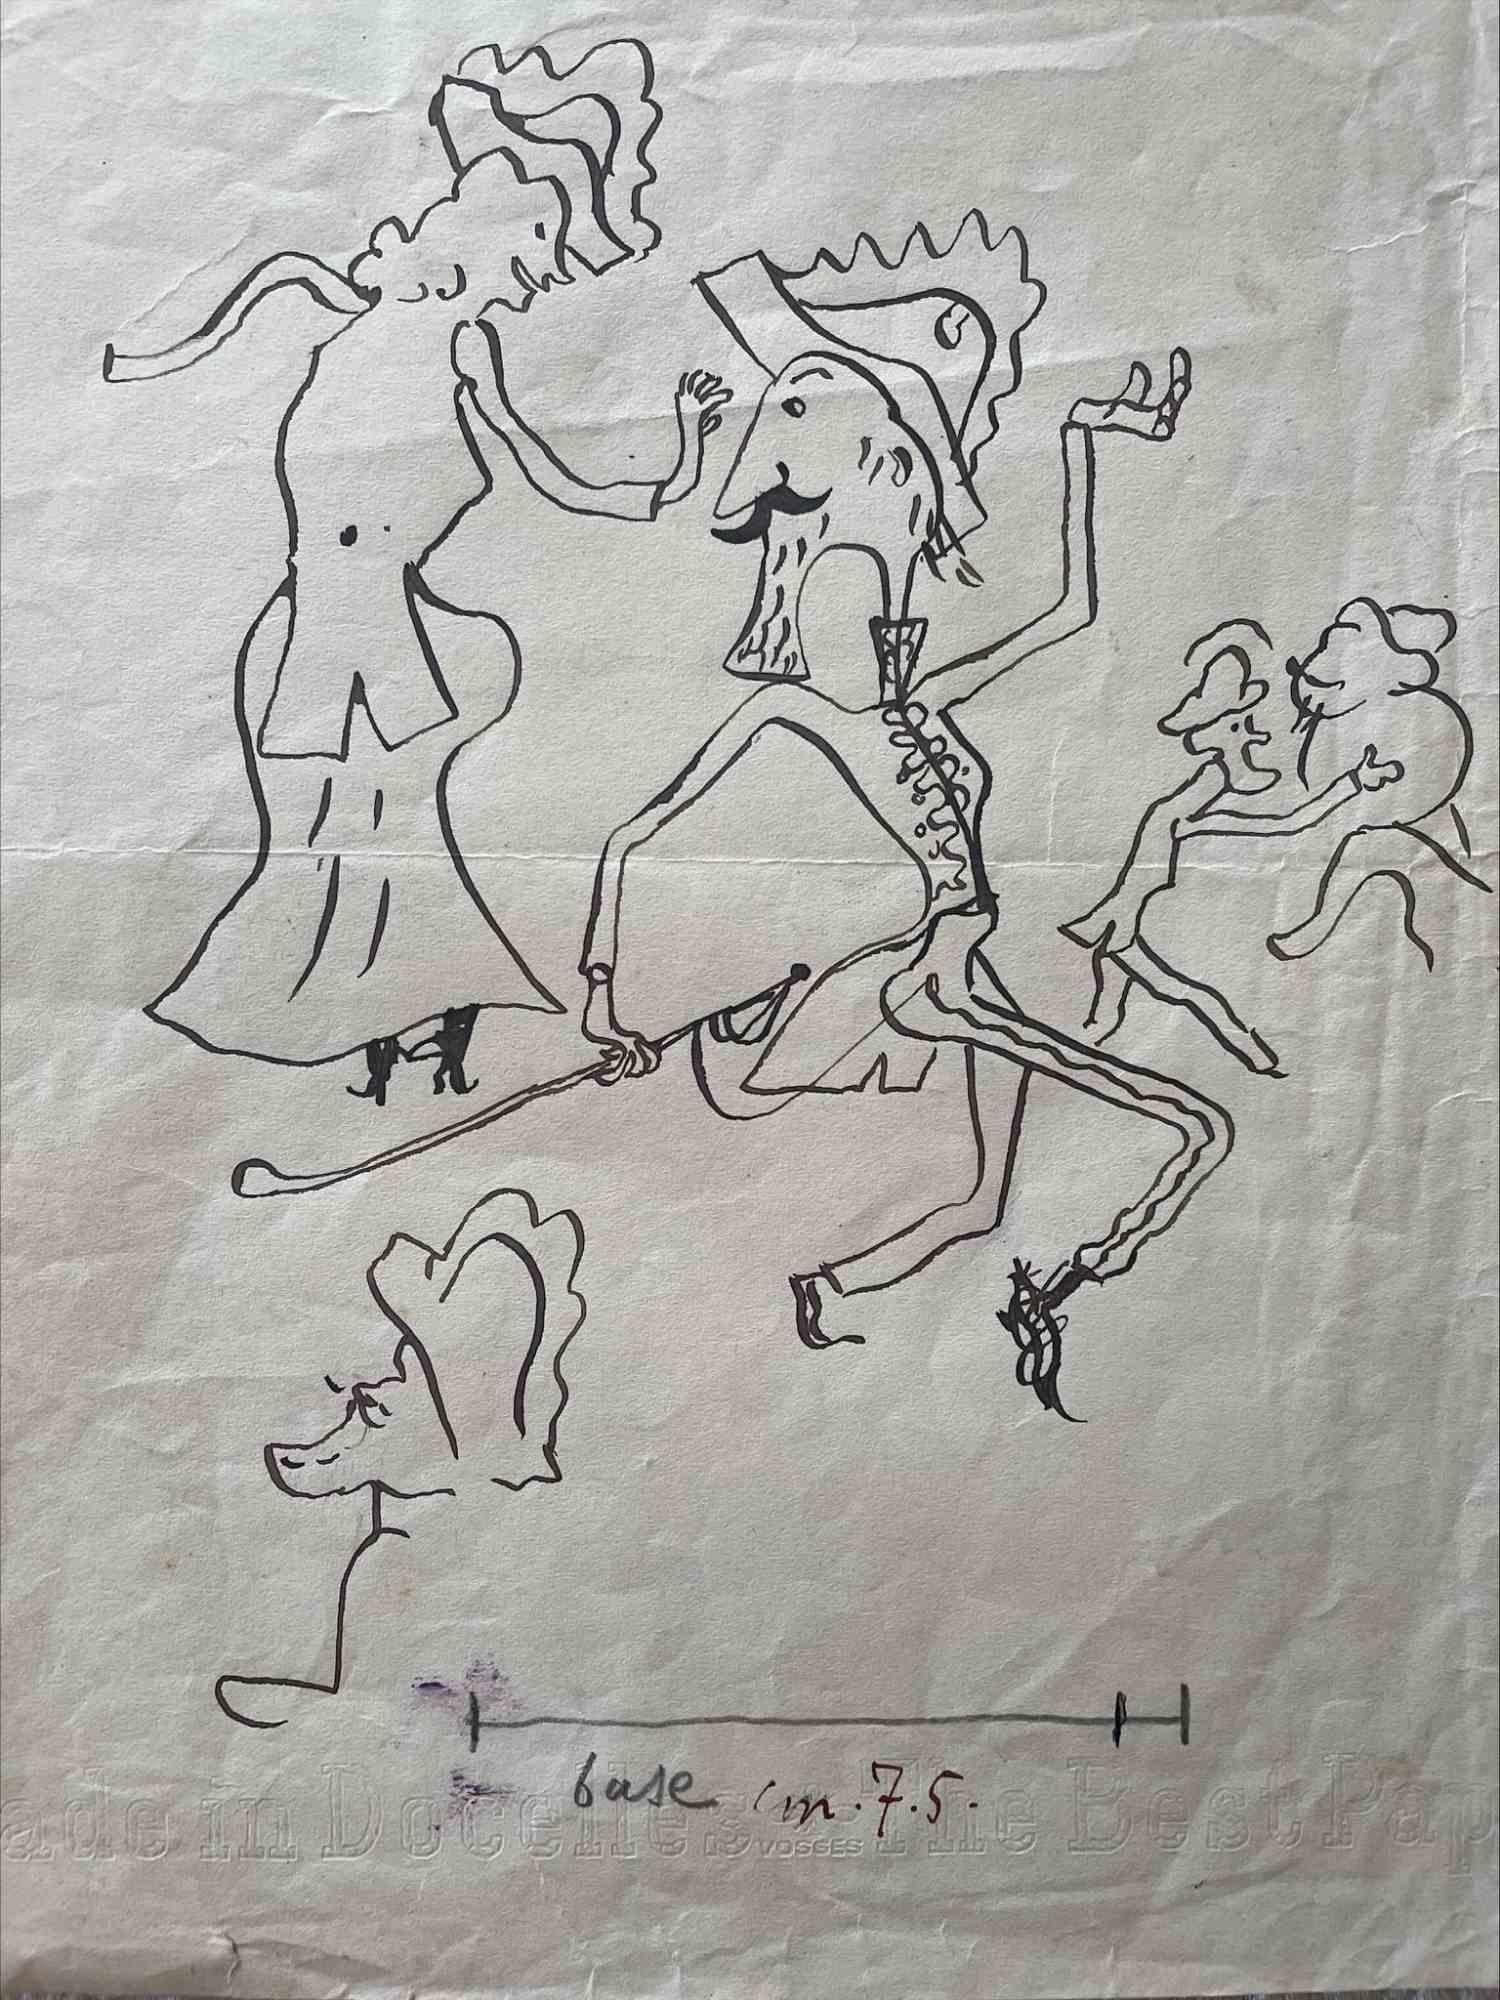 Die Komposition ist eine Zeichnung mit Feder auf Papier, die Alfredo Mezio 1934 für die Zeitschrift "Il Selvaggio", Jahr XI, S. 46, angefertigt hat.

Das Kunstwerk wird gekonnt durch sichere und starke Linien mit einer harmonischen Komposition